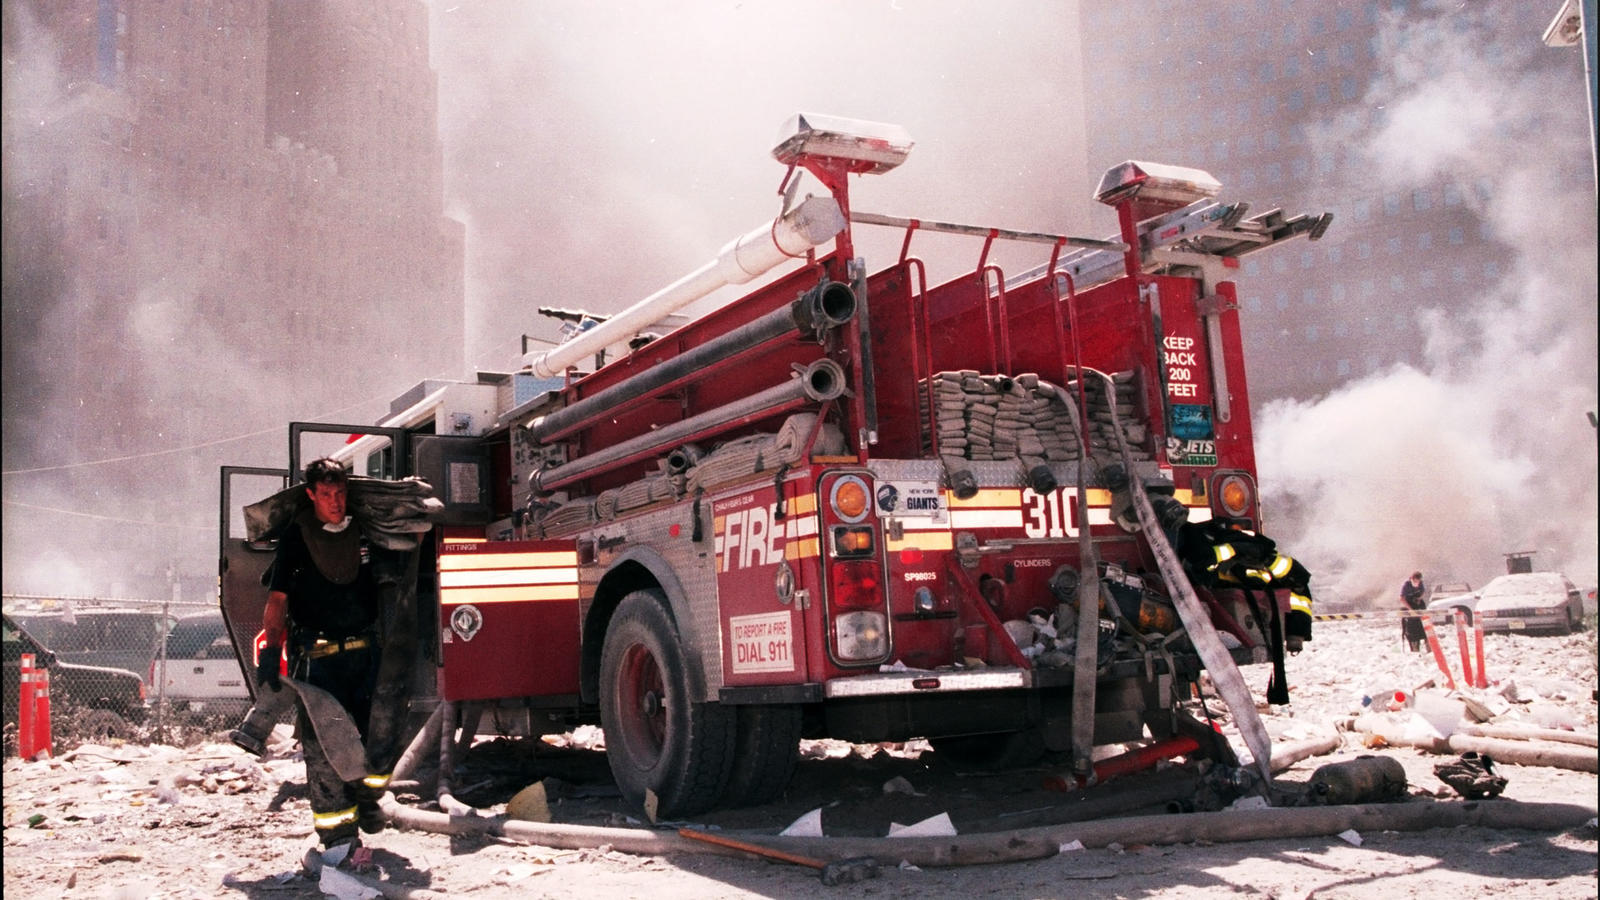 Firetruck in New York on September 11, 2001